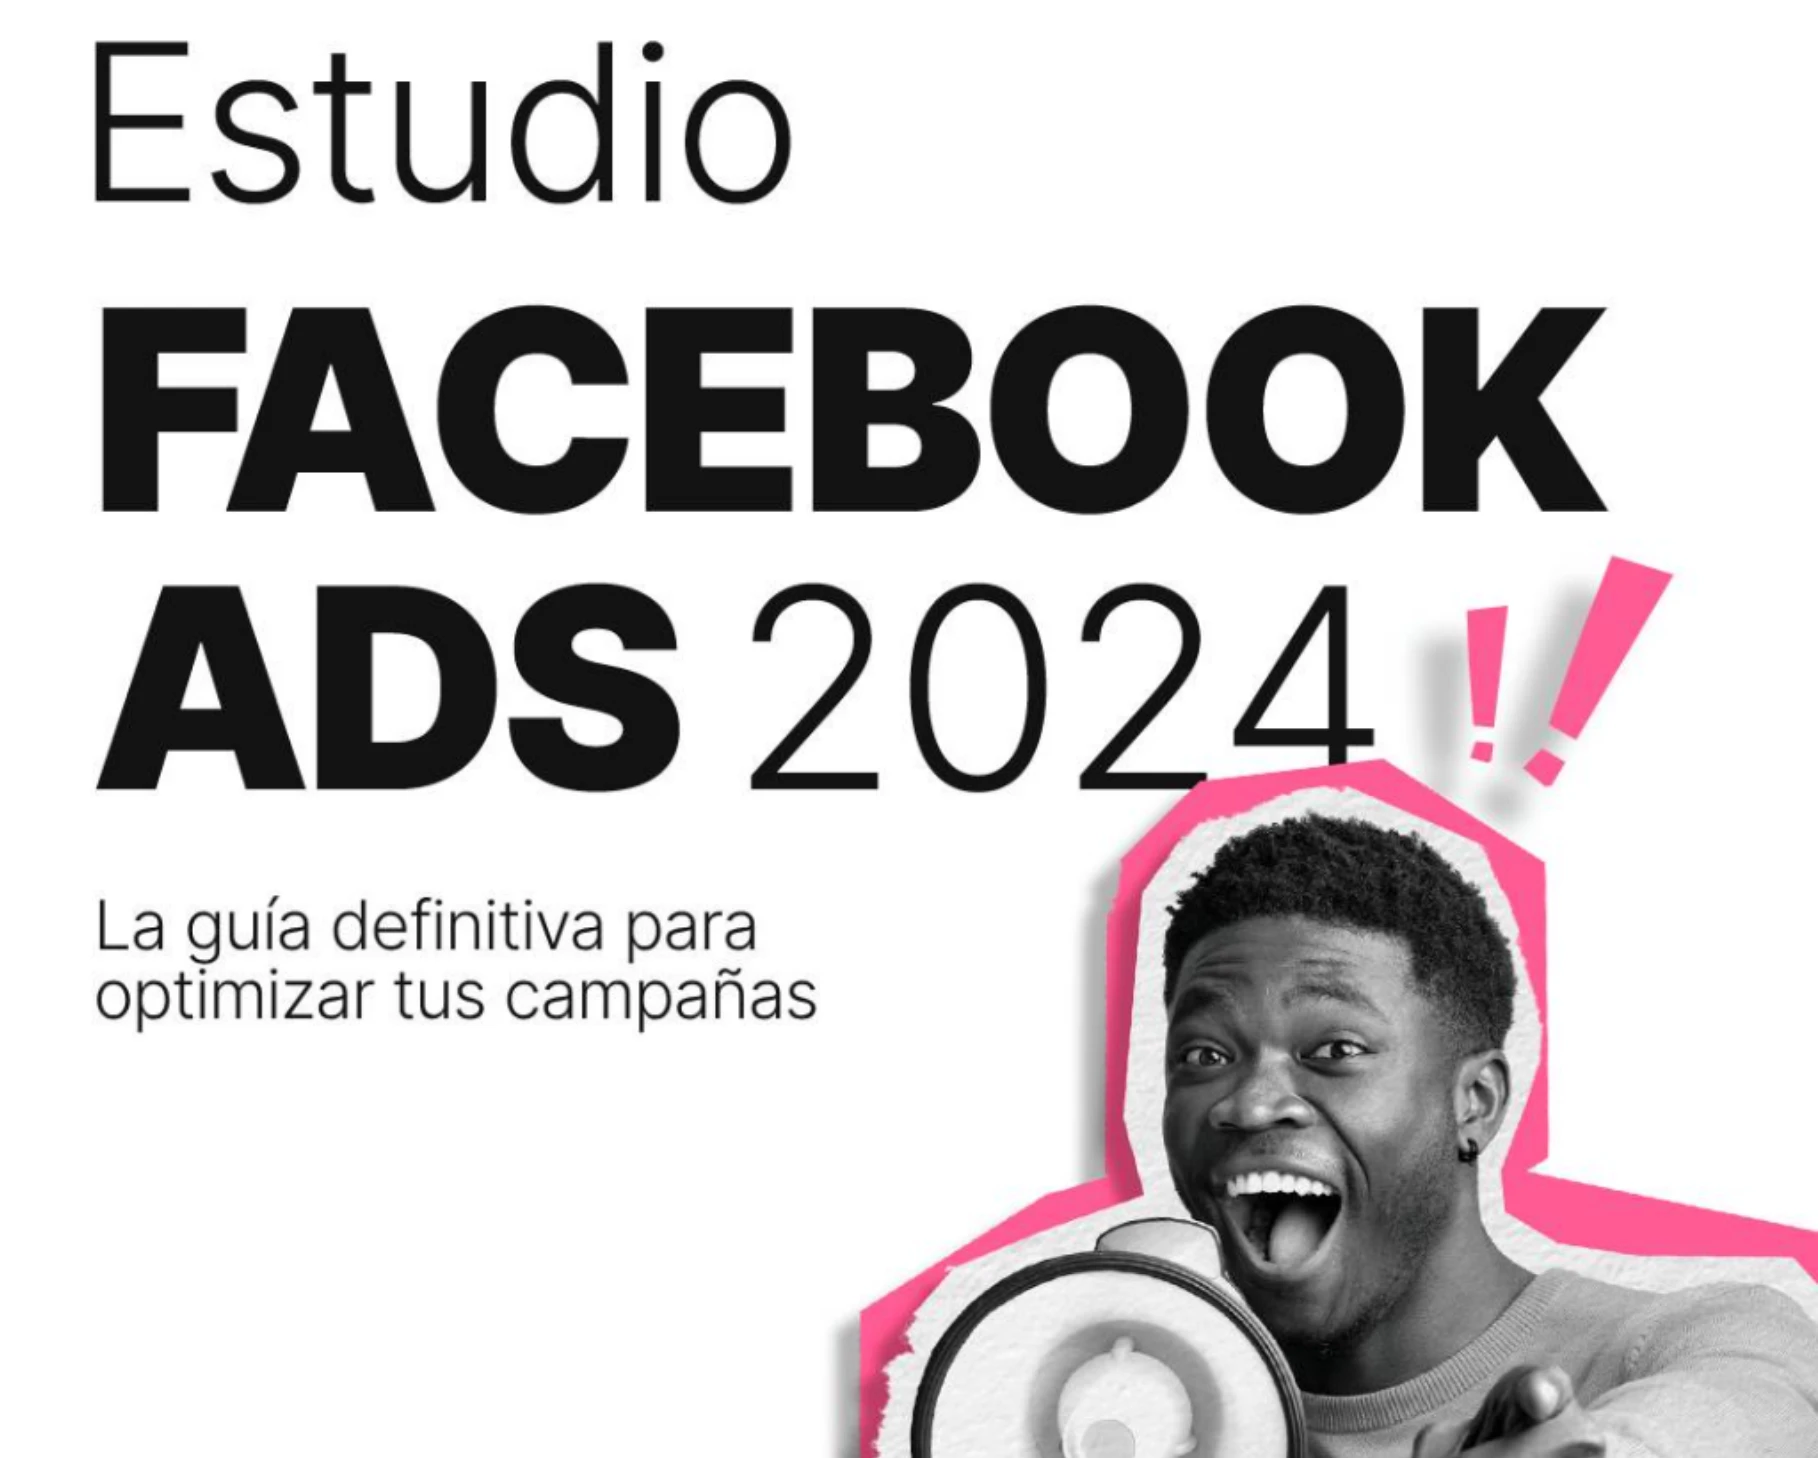 Portada del estudio Facebook Ads 2024 de Metricool